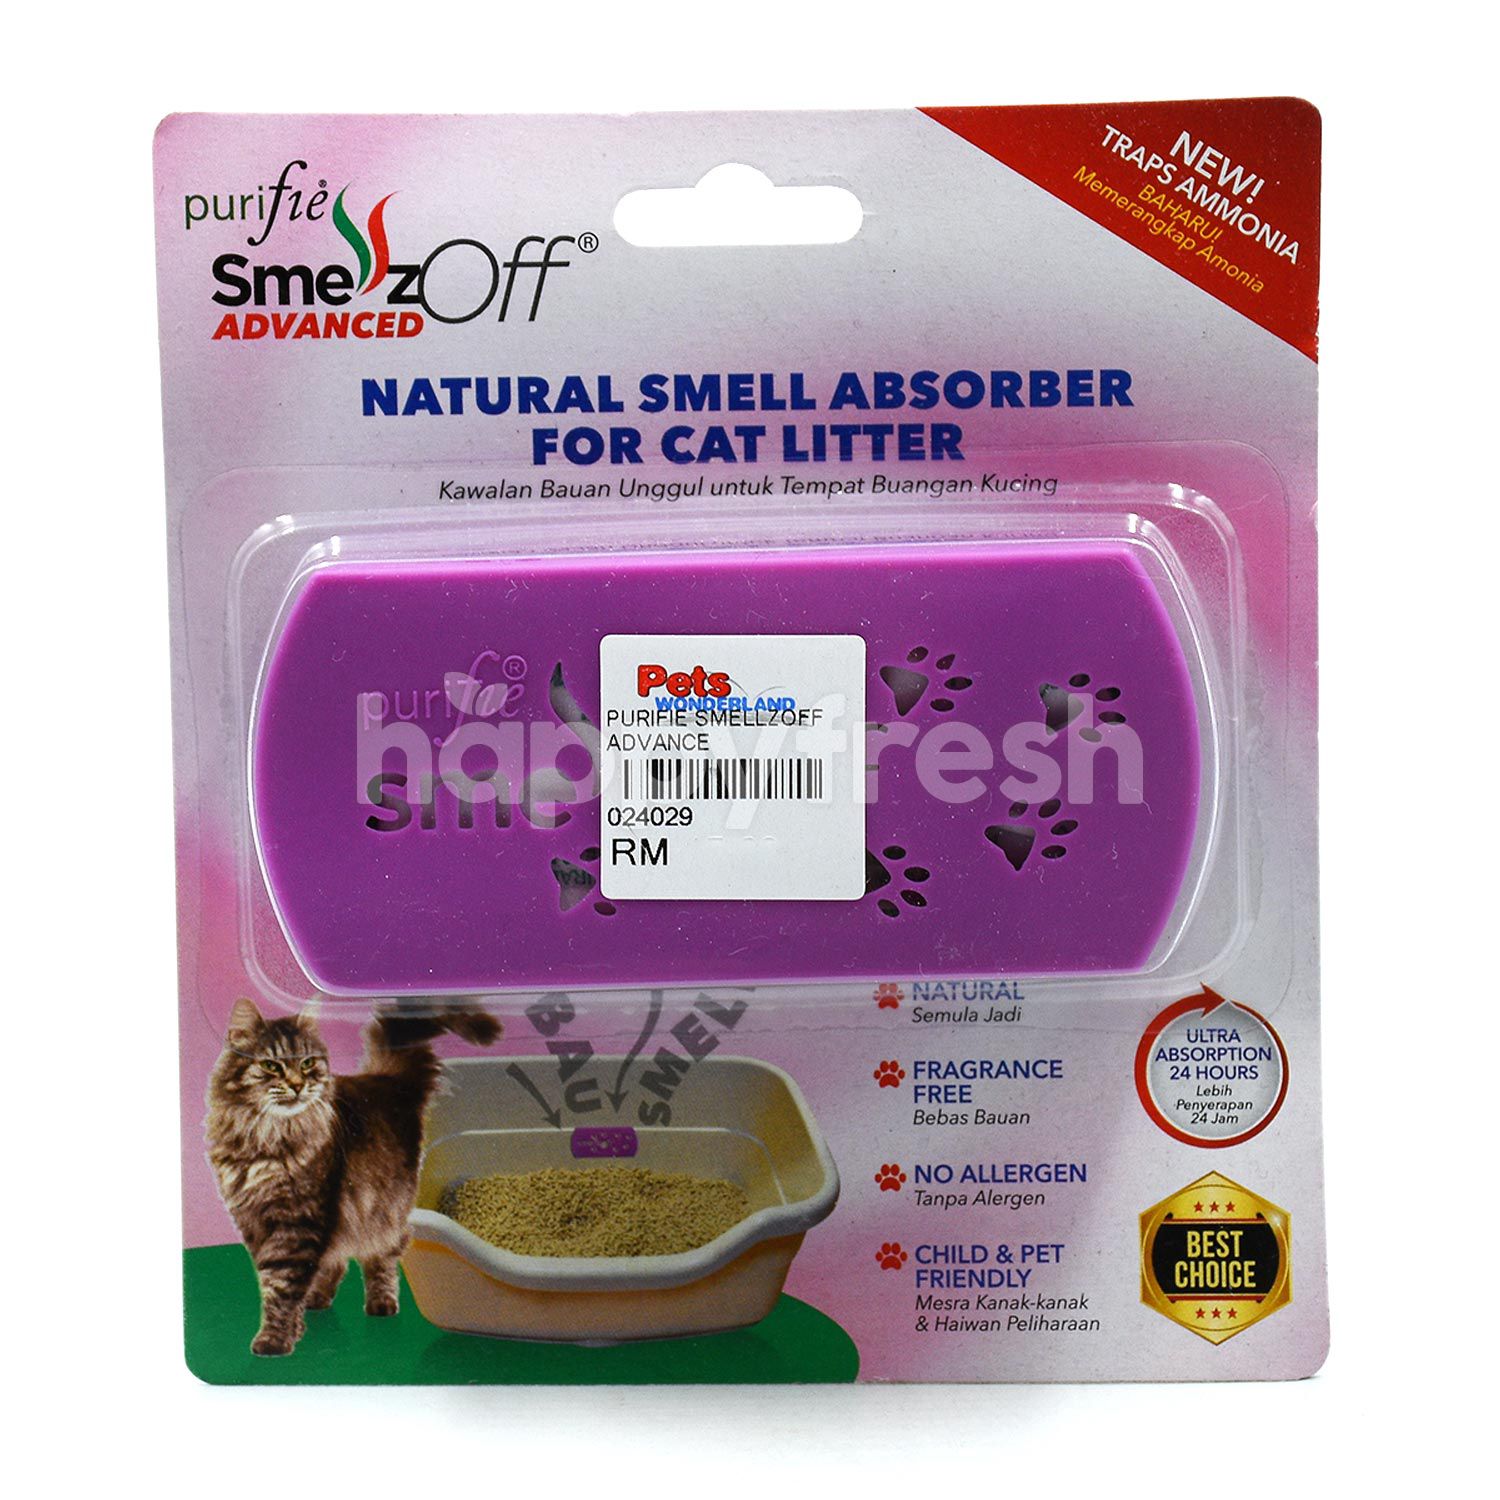 Beli Purifie Natural Smell Absorber For Cat Litter dari Pets 